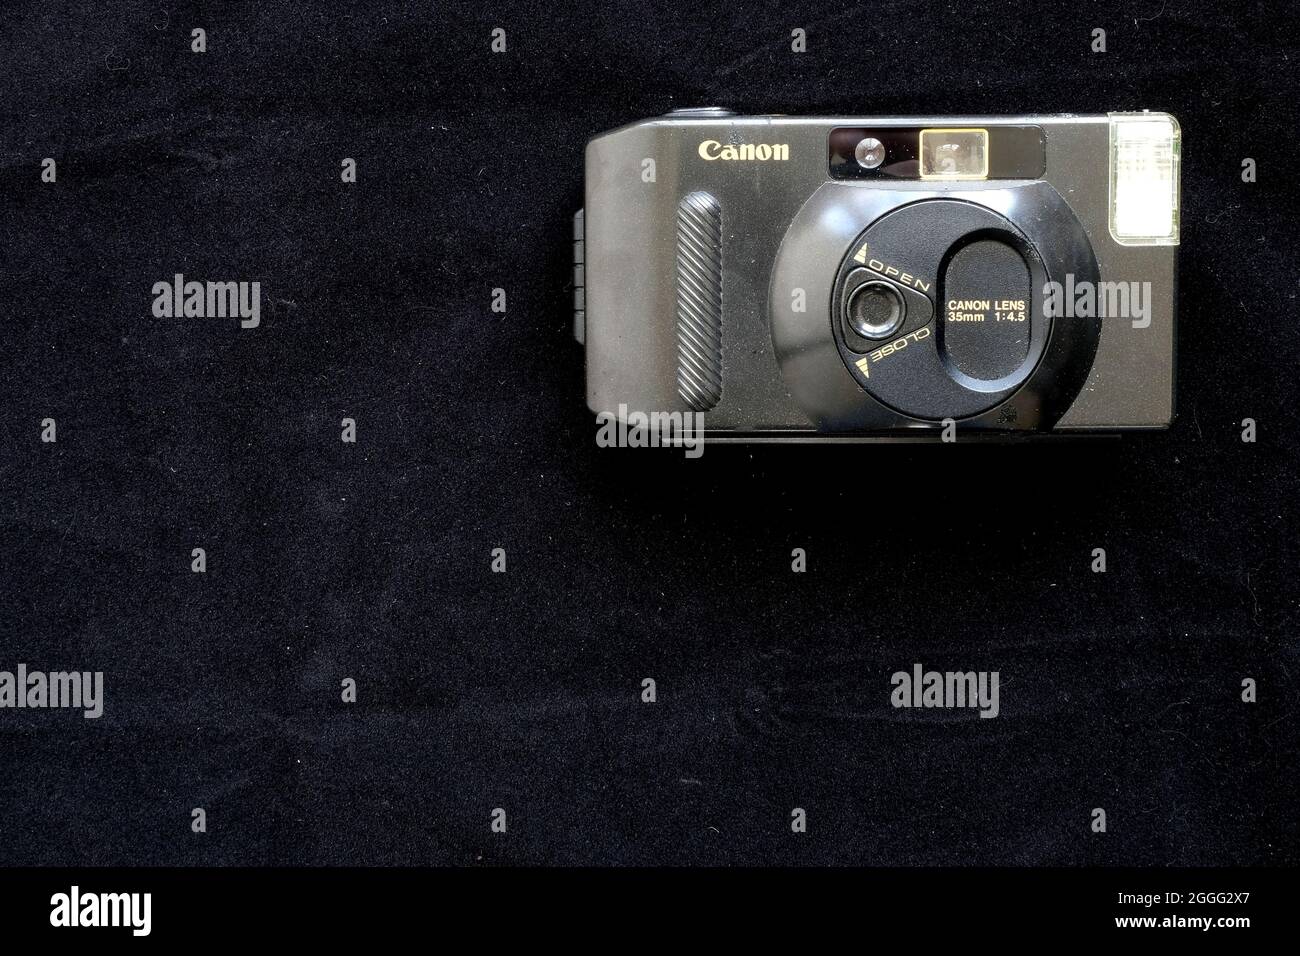 Un Canon Sappy aux environs de 1985 ; un appareil photo à objectif 35 mm entièrement automatique à focale fixe avec flash intégré nécessitant deux piles AAA. Banque D'Images